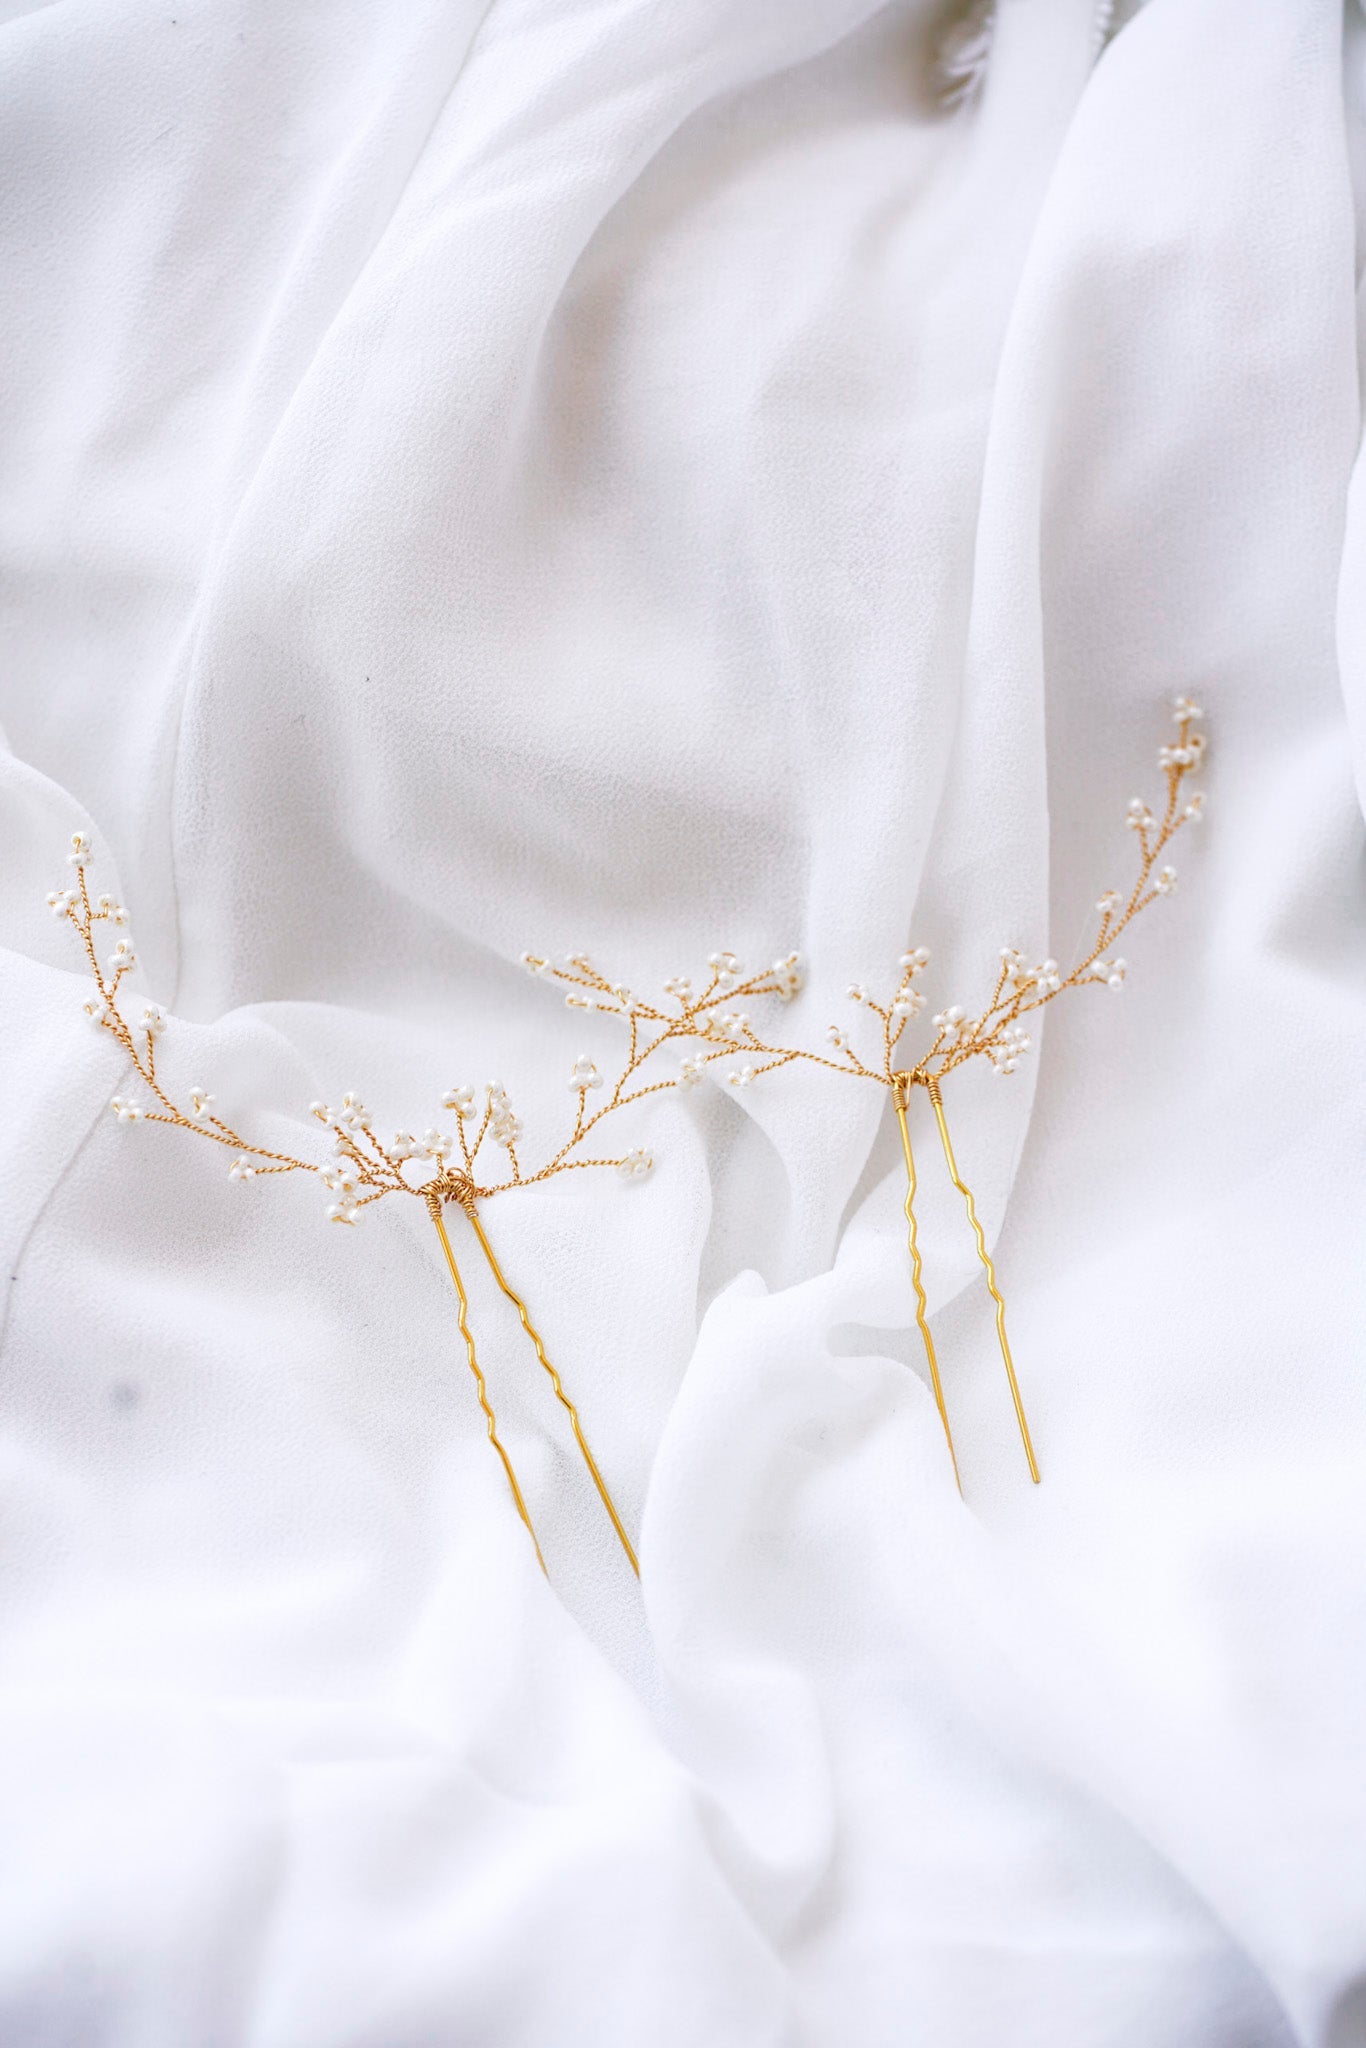 Deux pics à cheveux dorées formant des branches fleuries de petites fleurs en perles rocailles, posés sur un drap blanc